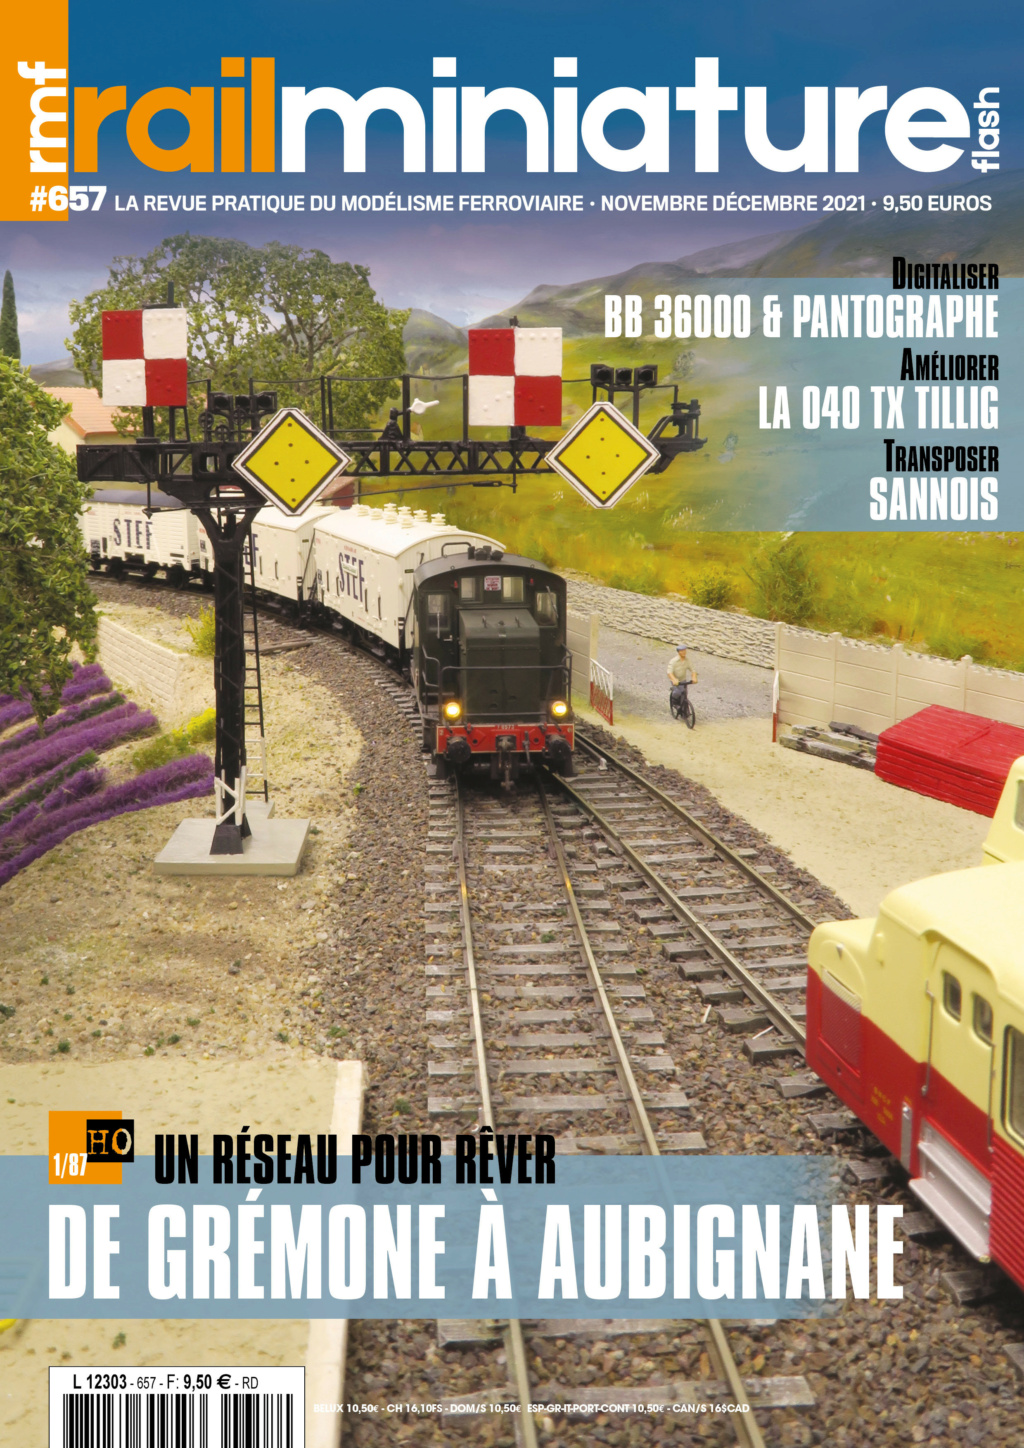 Rail Miniature Flash #657 Novembre / Décembre 2021 Couv-r13